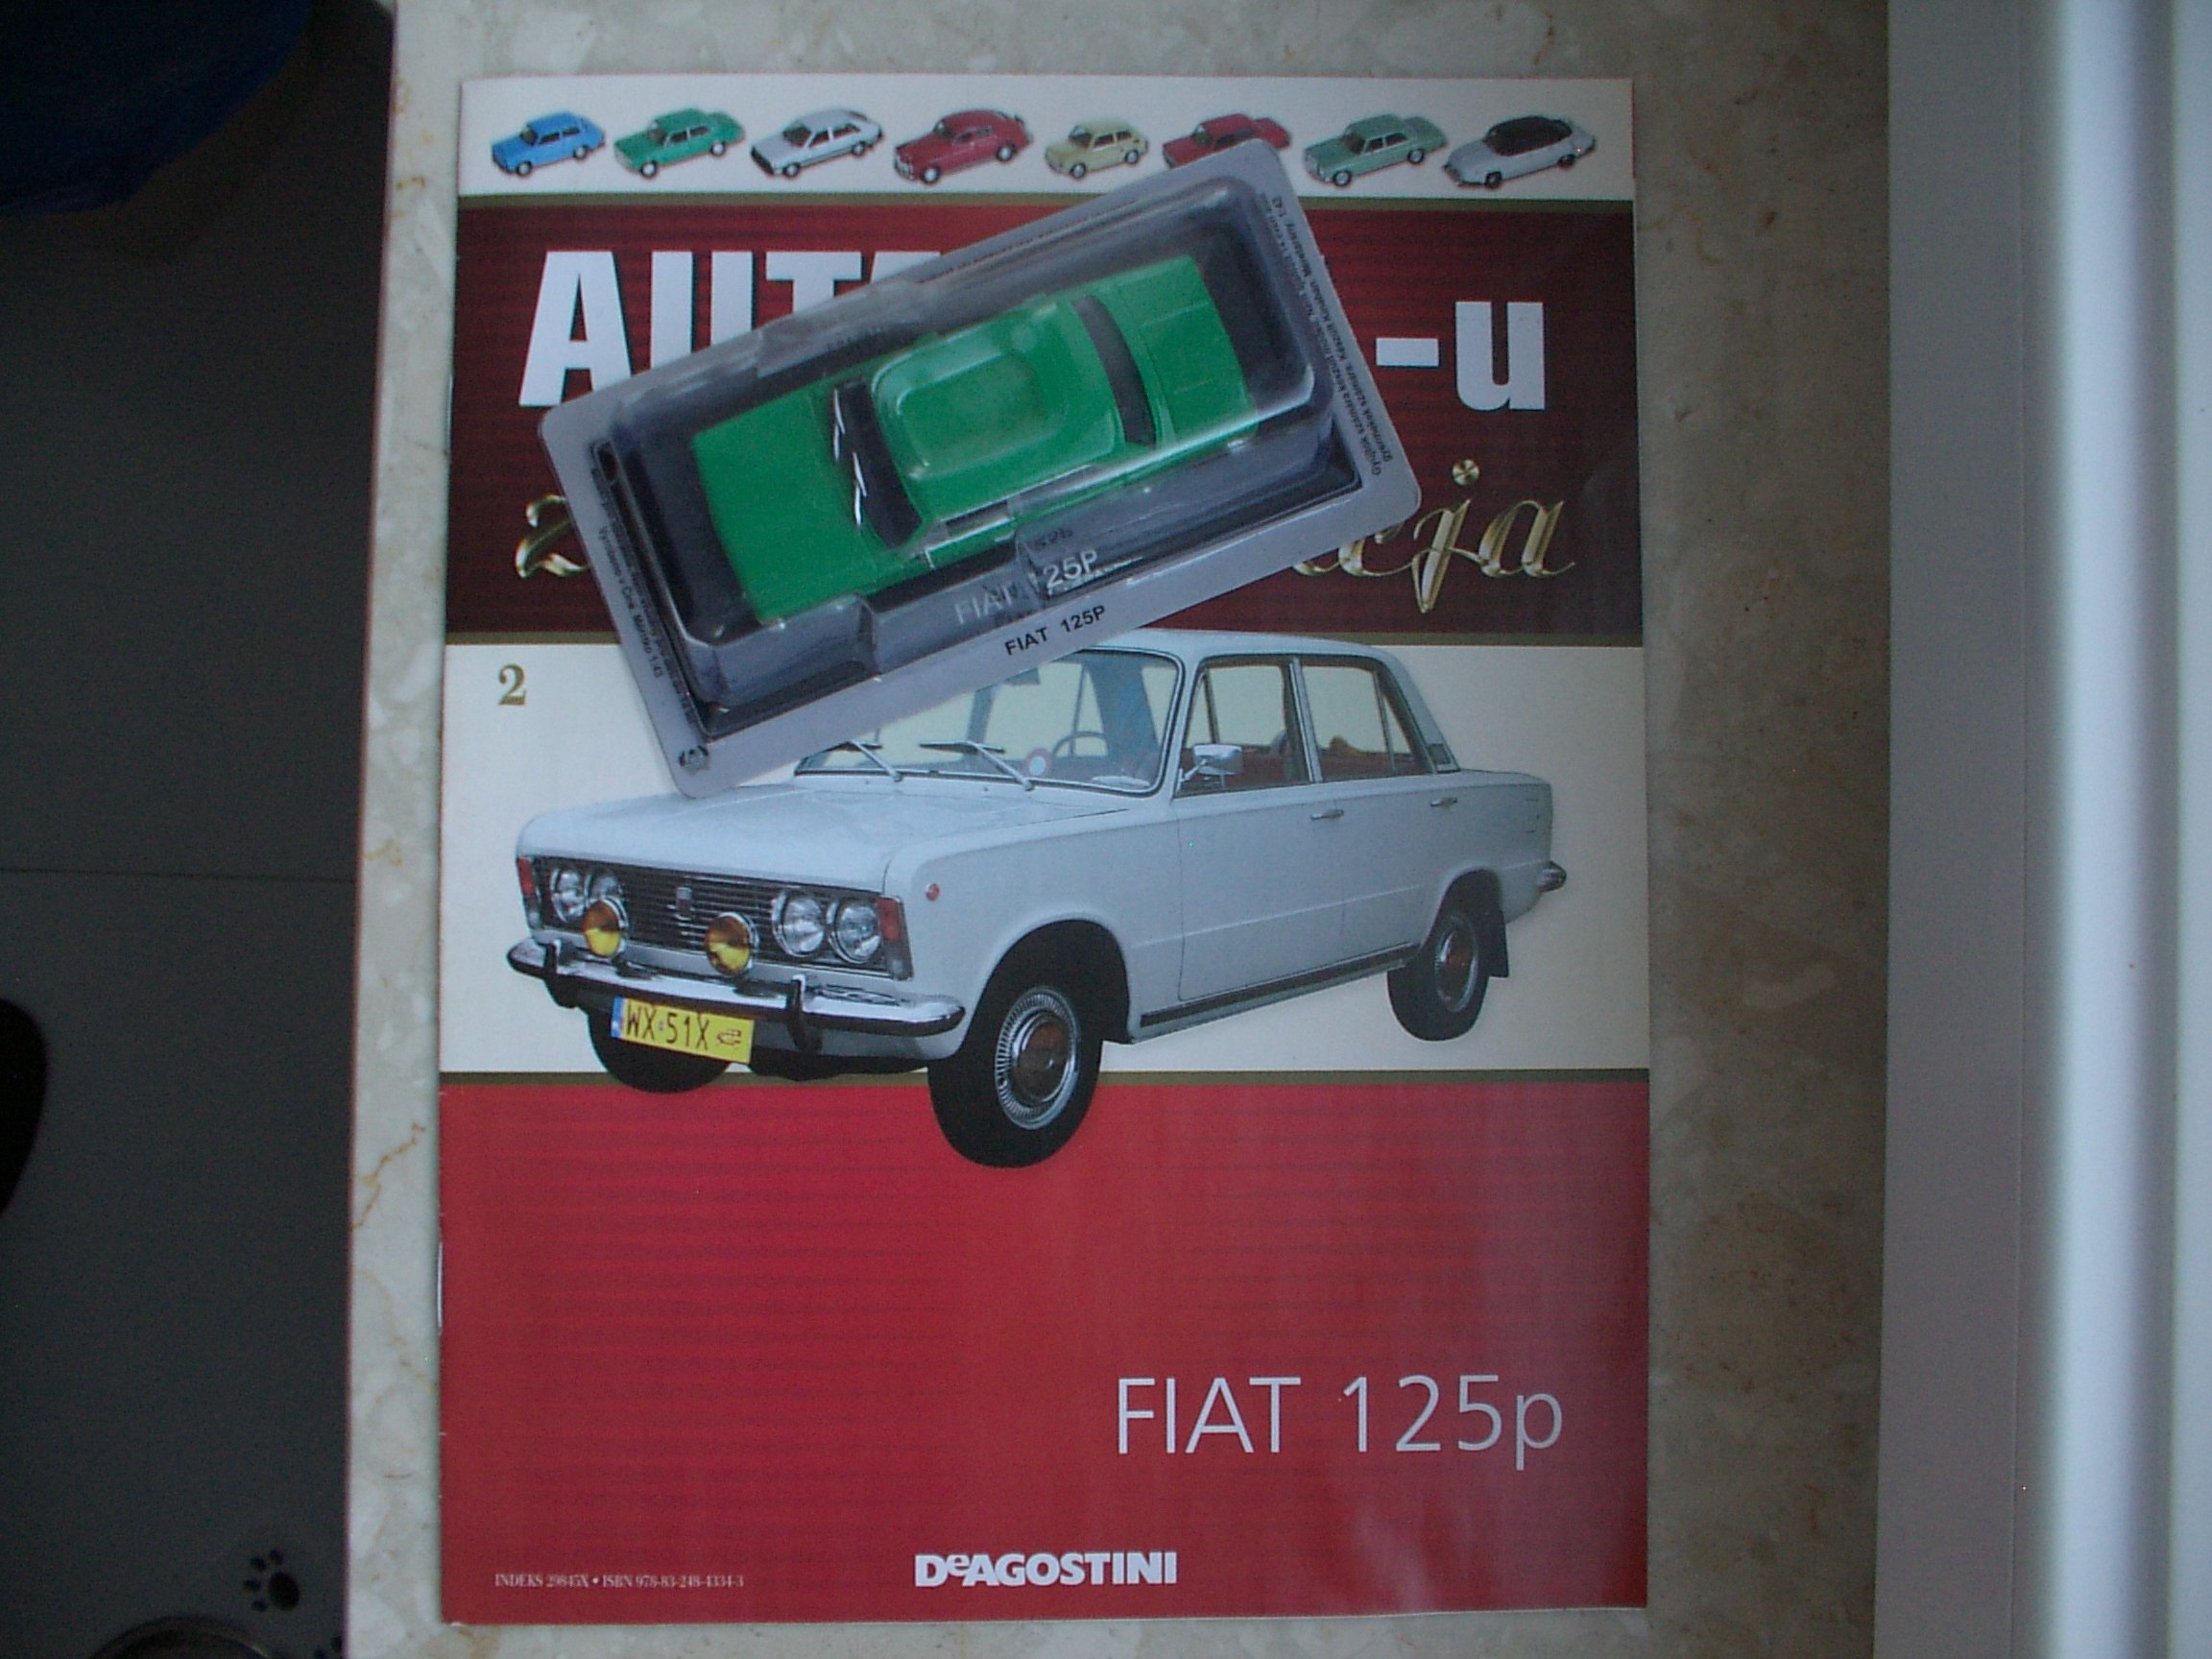 Fiat 125p Nowy Zlota Kolekcja Aut Prl Nr 2 7033398889 Oficjalne Archiwum Allegro